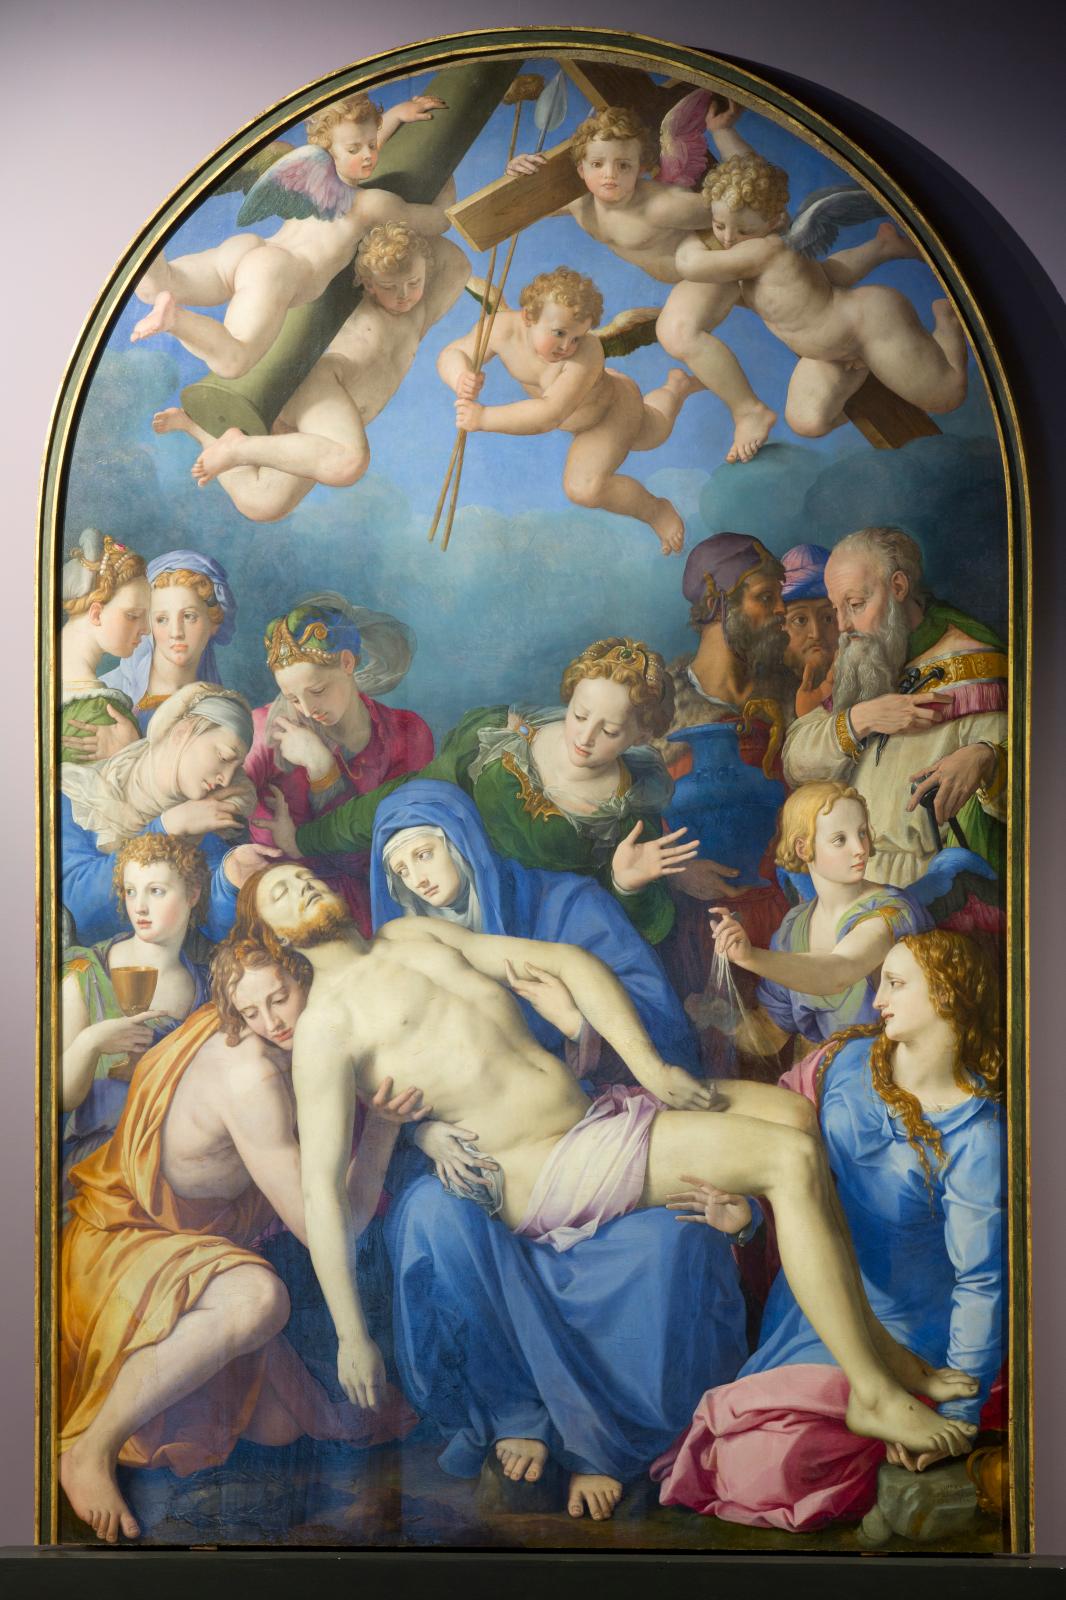 Bronzino, Déploration sur le Christ mort, 1543-1545, huile sur bois, musée des beaux-arts et d’archéologie de Besançon (détail).